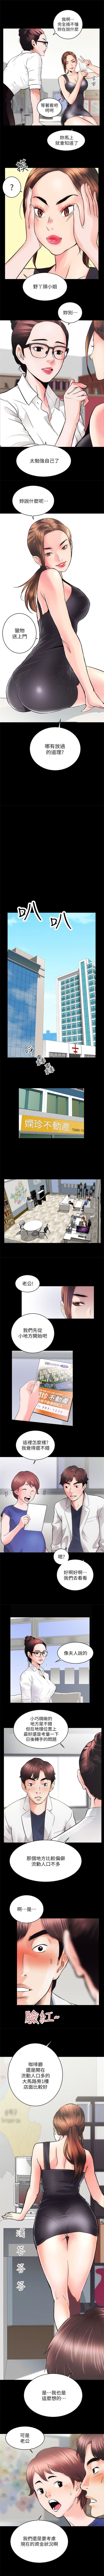 性溢房屋 1-20 中文翻译（应求更新中） page 15 full